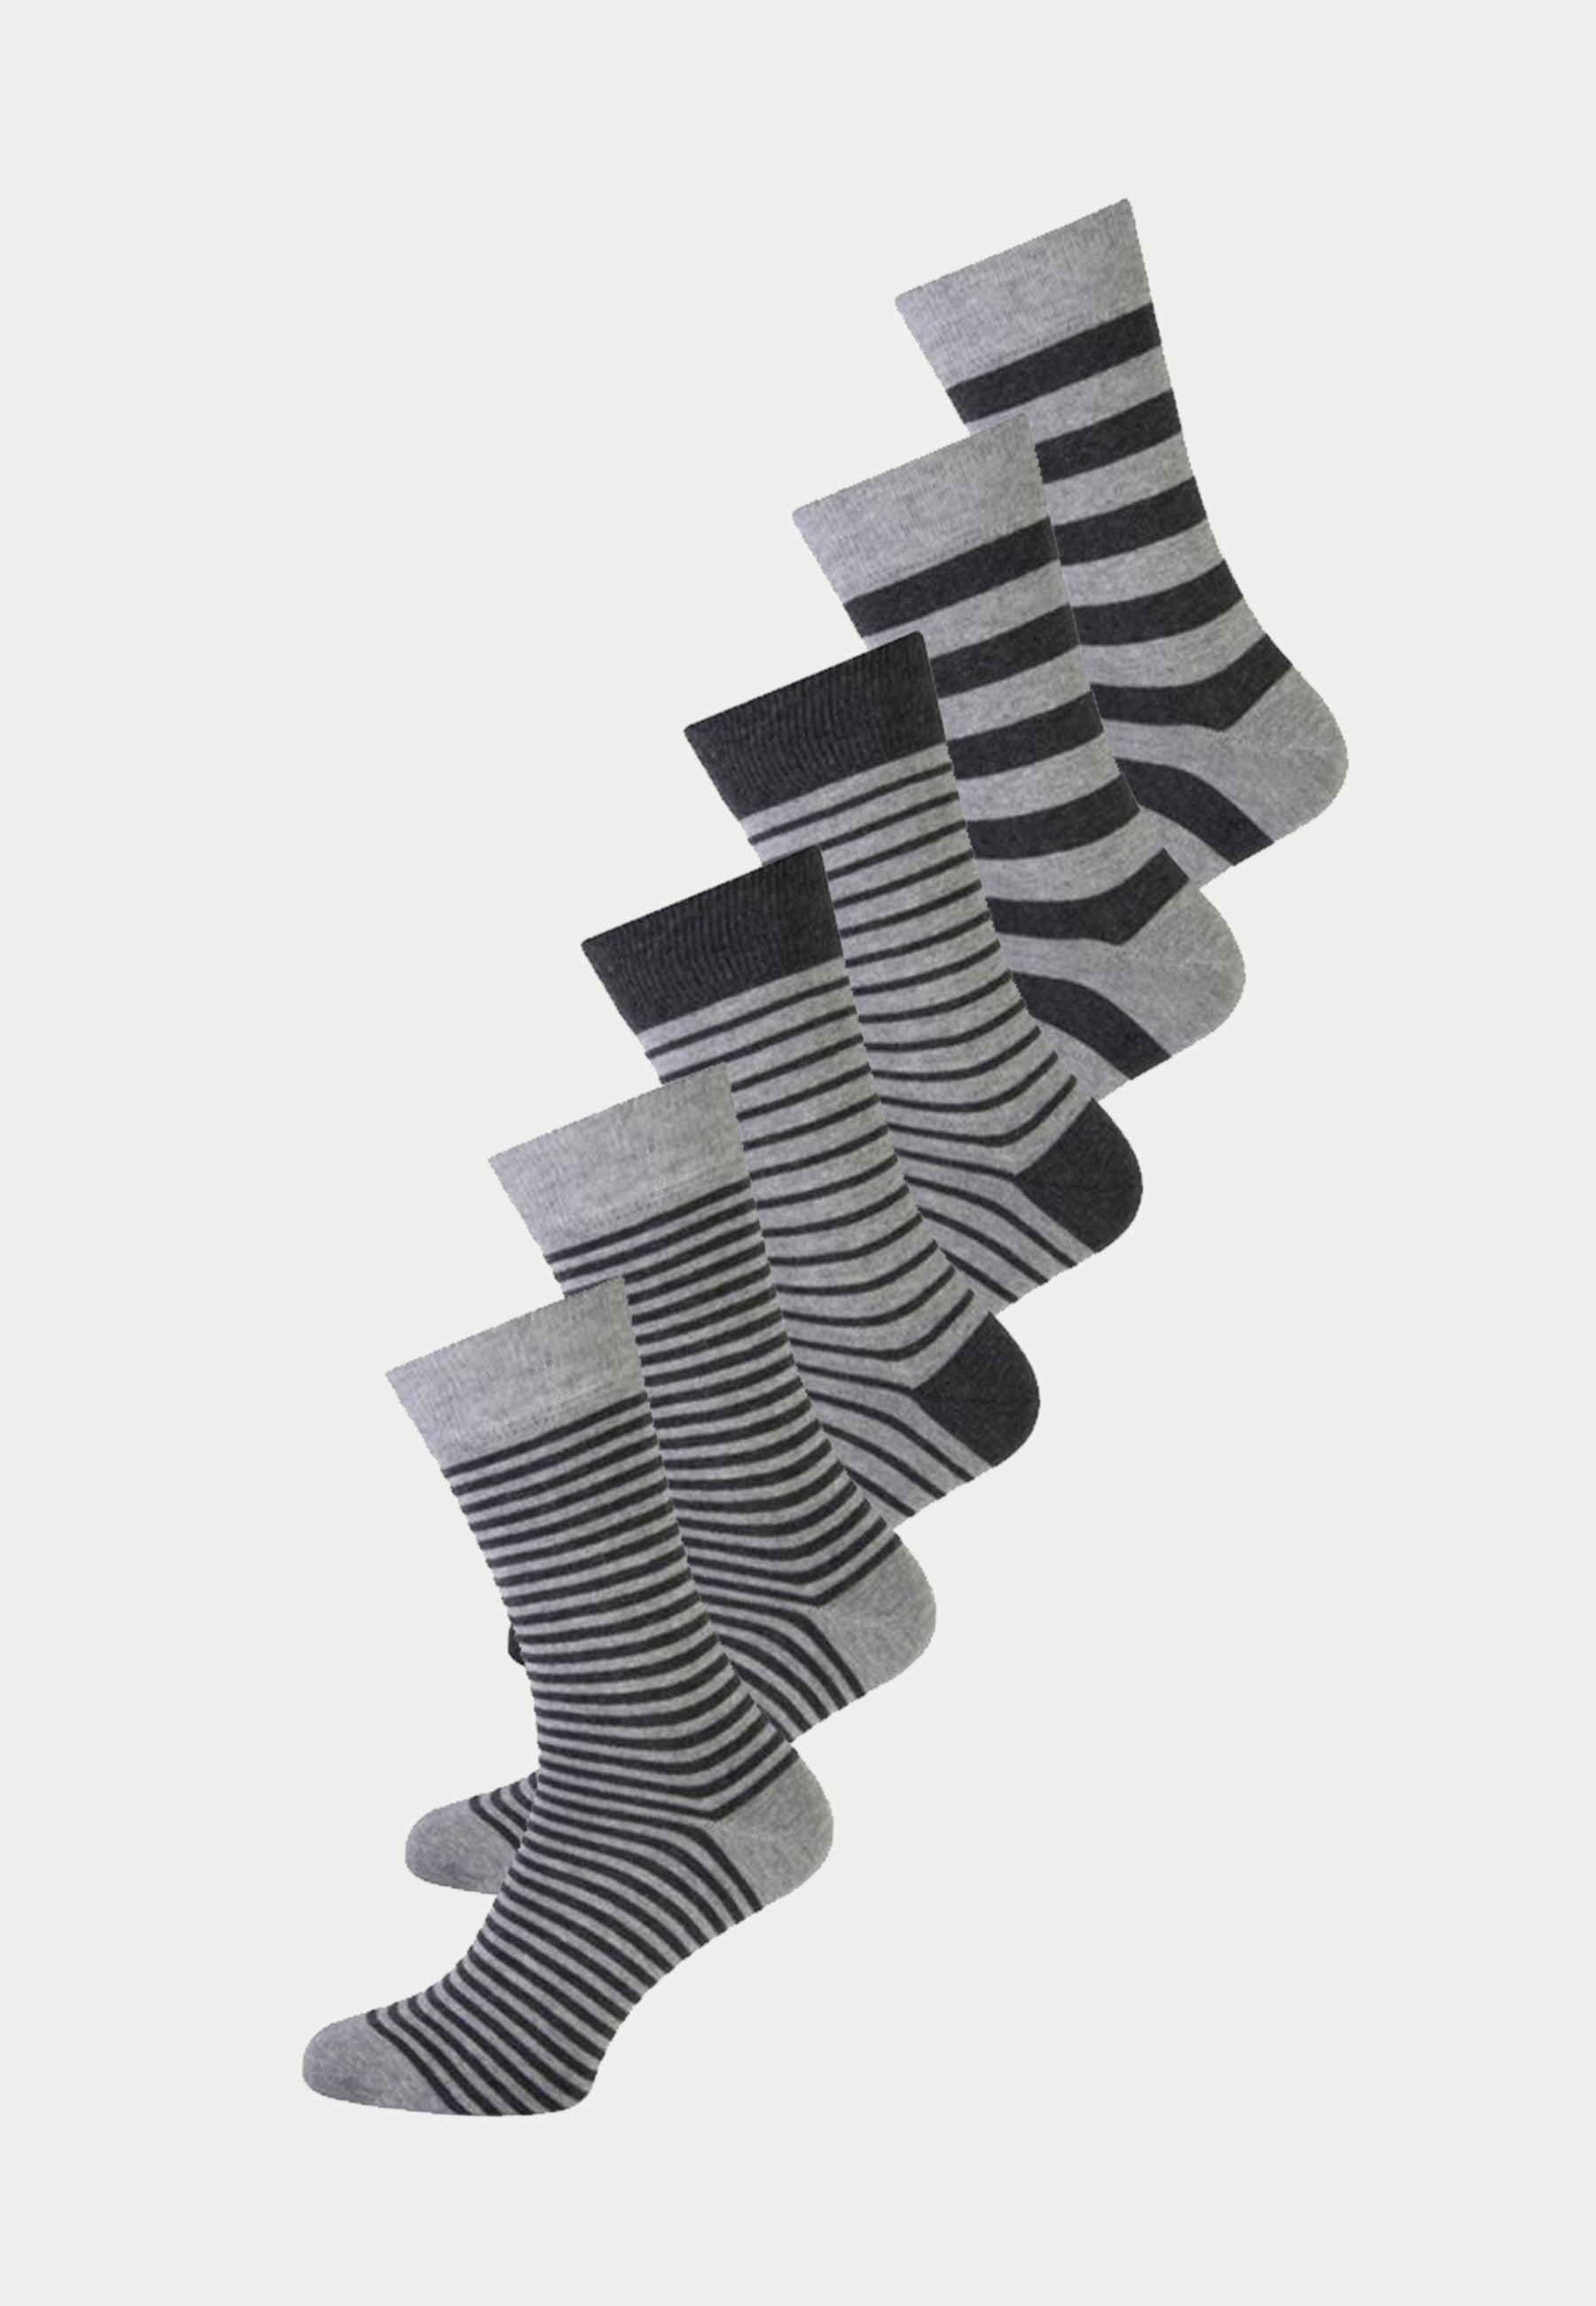 6 paar grijze fashion socks met zwarte strepen print van het merk Teckel